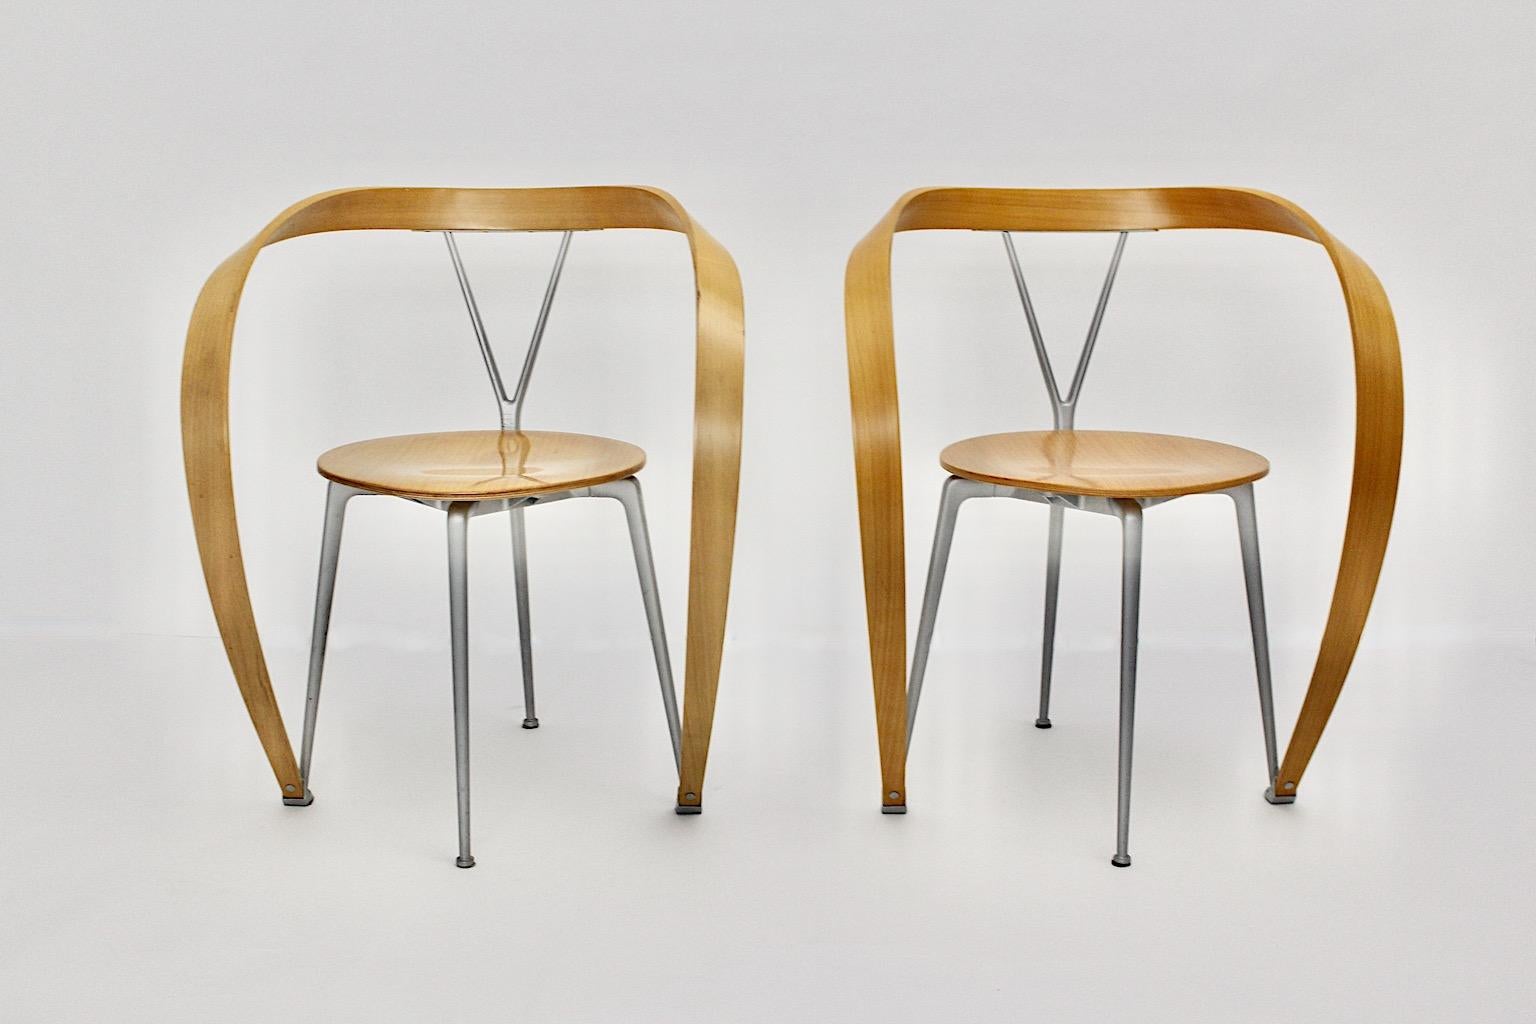 Modernistisches Vintage-Sesselpaar Modell Revers, das von Andrea Branzi für Cassina, Italien 1993, entworfen wurde.
Andrea Branzi (1938) Italienischer Architekt und Designer.
Nach seinem Abschluss 1966 gründete er zusammen mit Paolo Deganello und